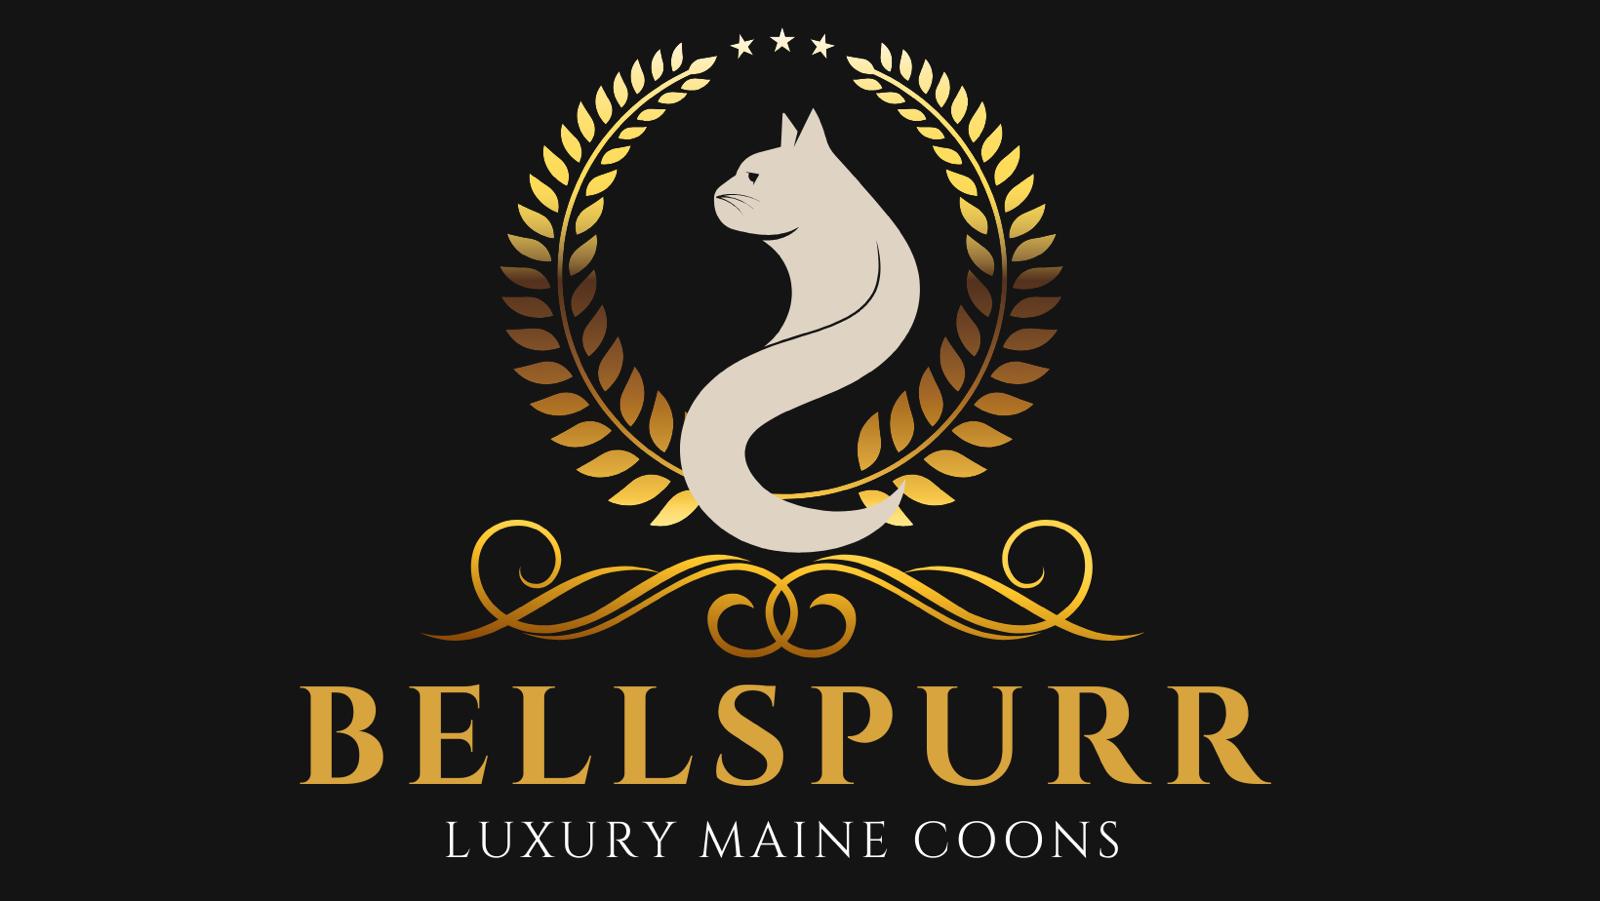 Bellspurr Maine Coons